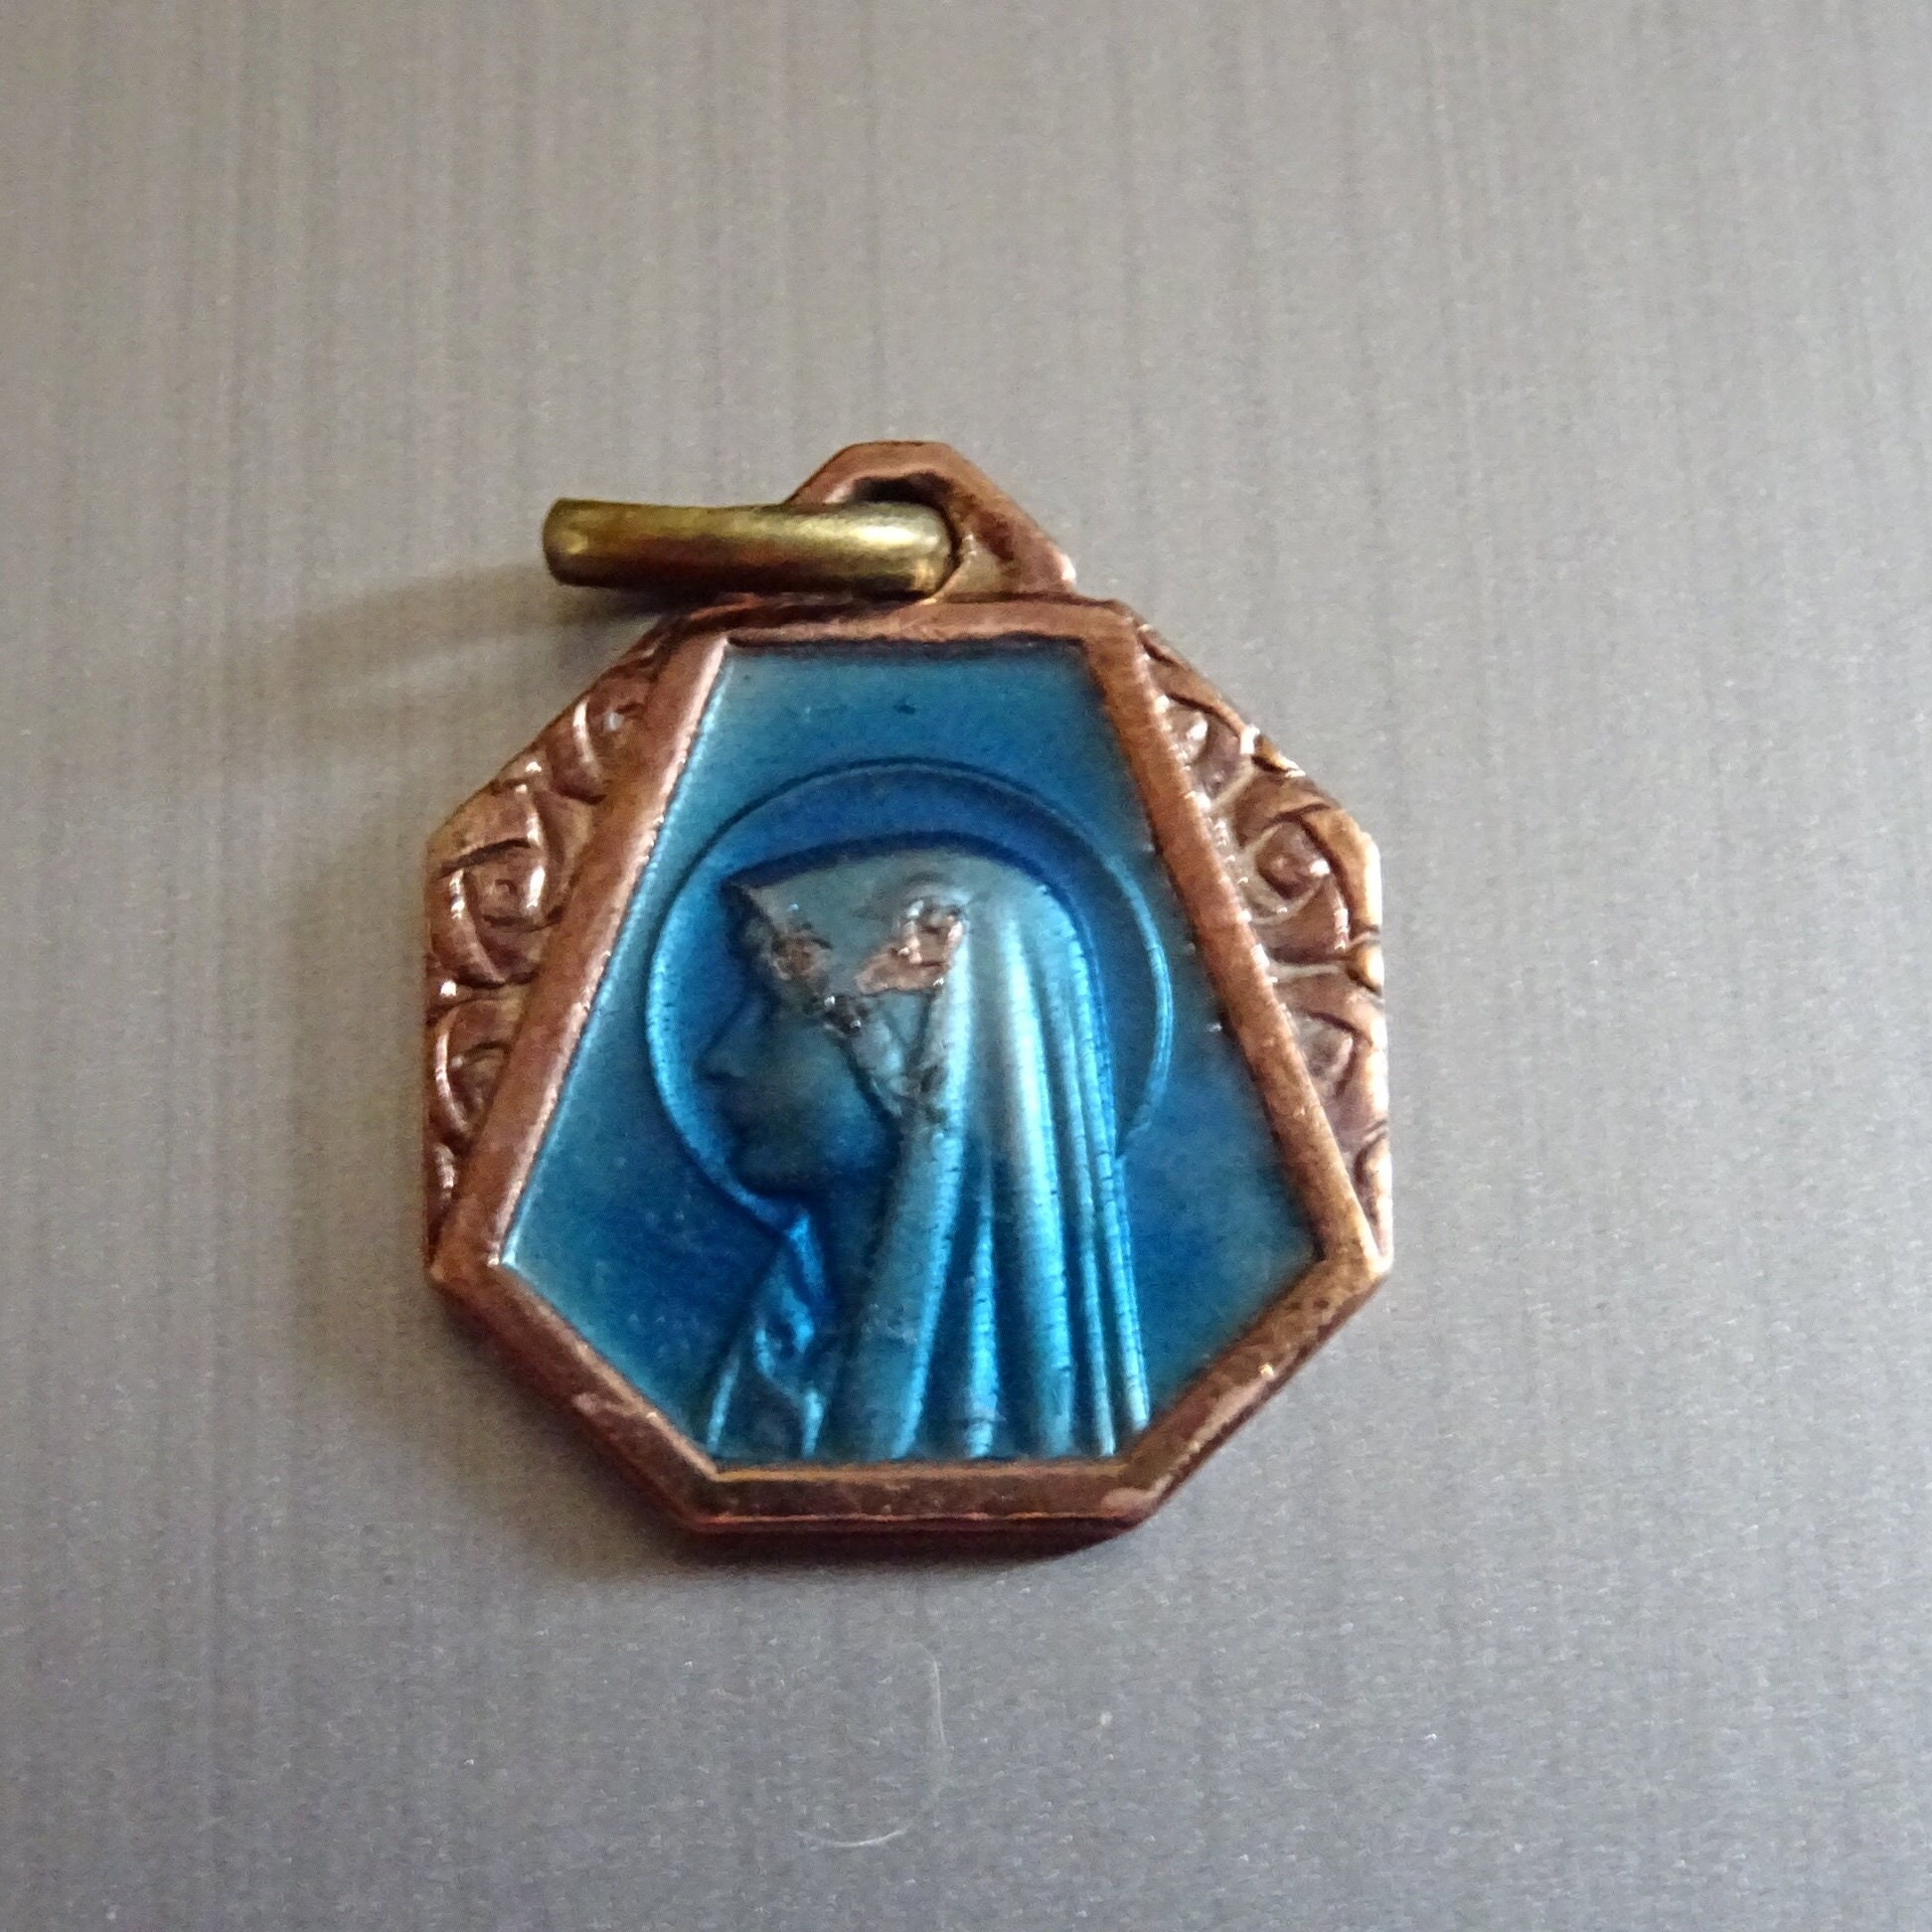 Virgin Mary Émail Or Bleu Couleur. Millésime Religieux Français Pendentif Médaillon Saint Charme B 7